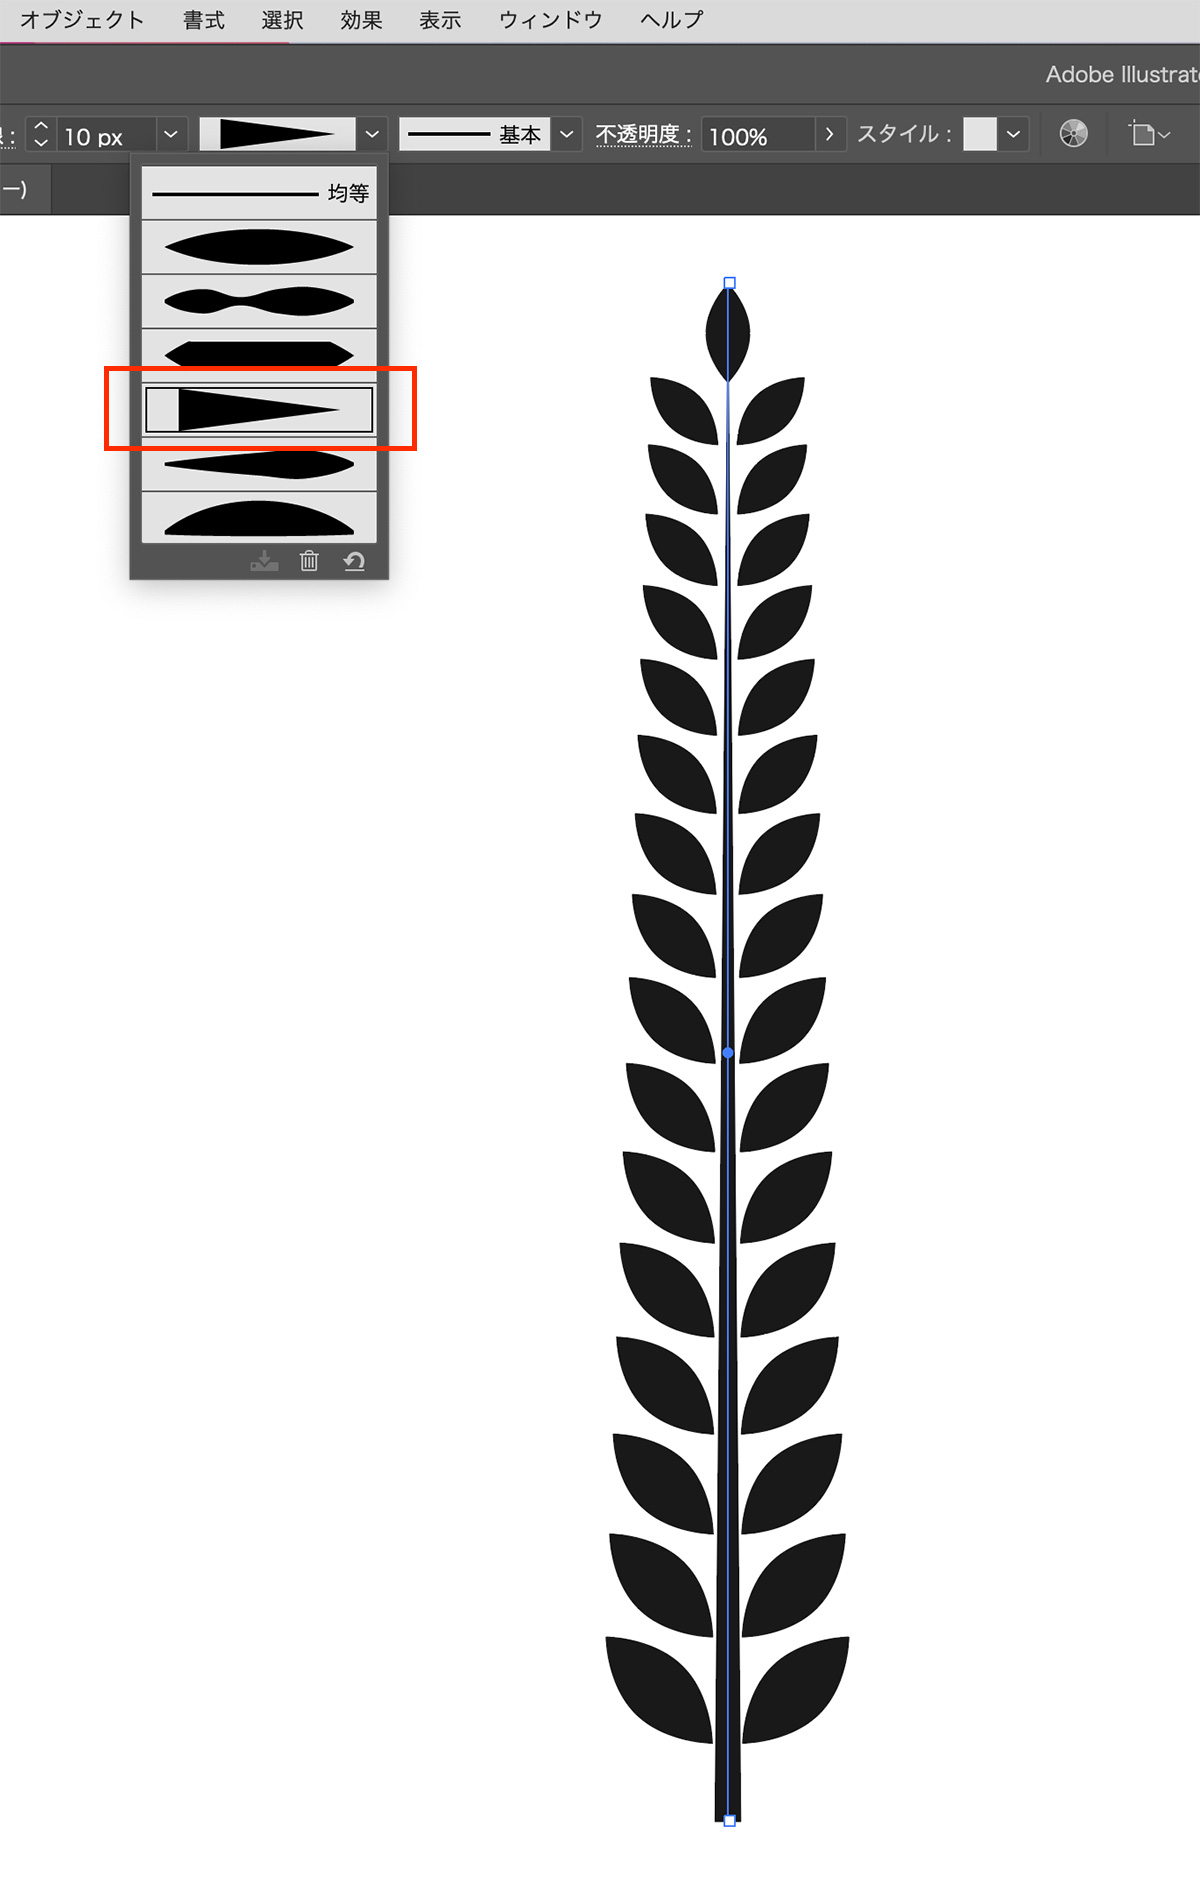 葉っぱの間に1本垂直な線を配置